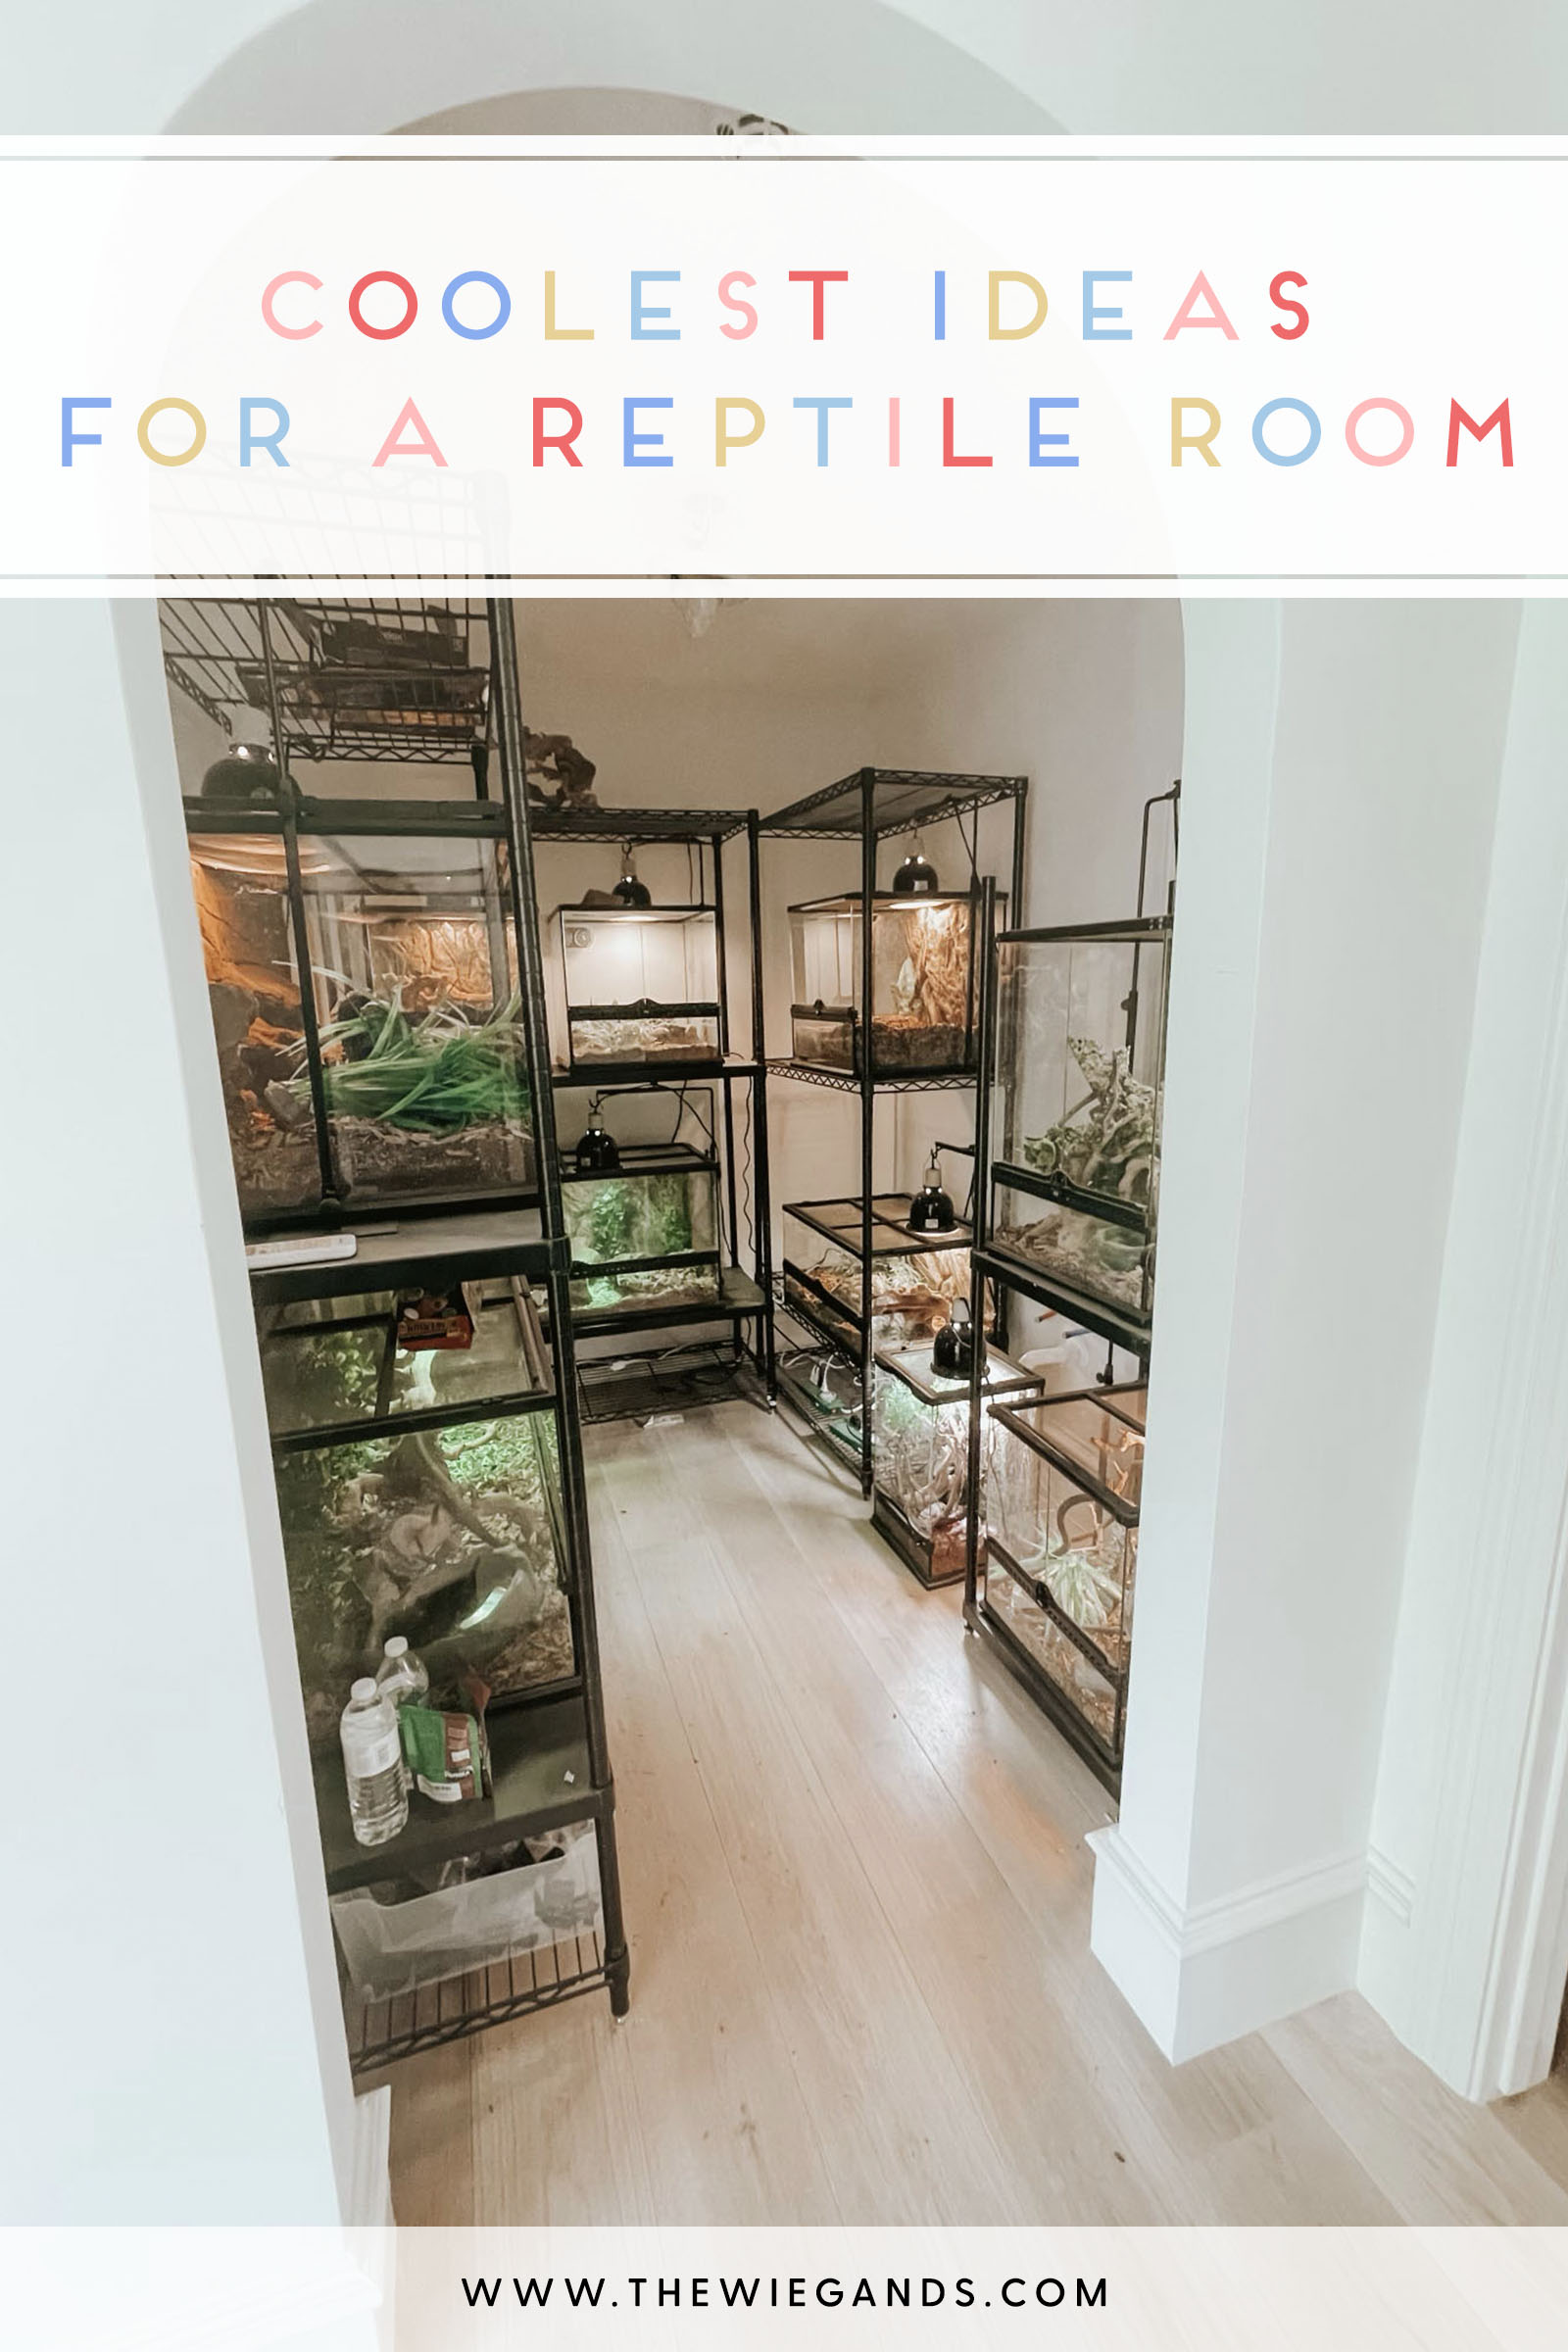 Reptile Room Ideas: Design Ideas